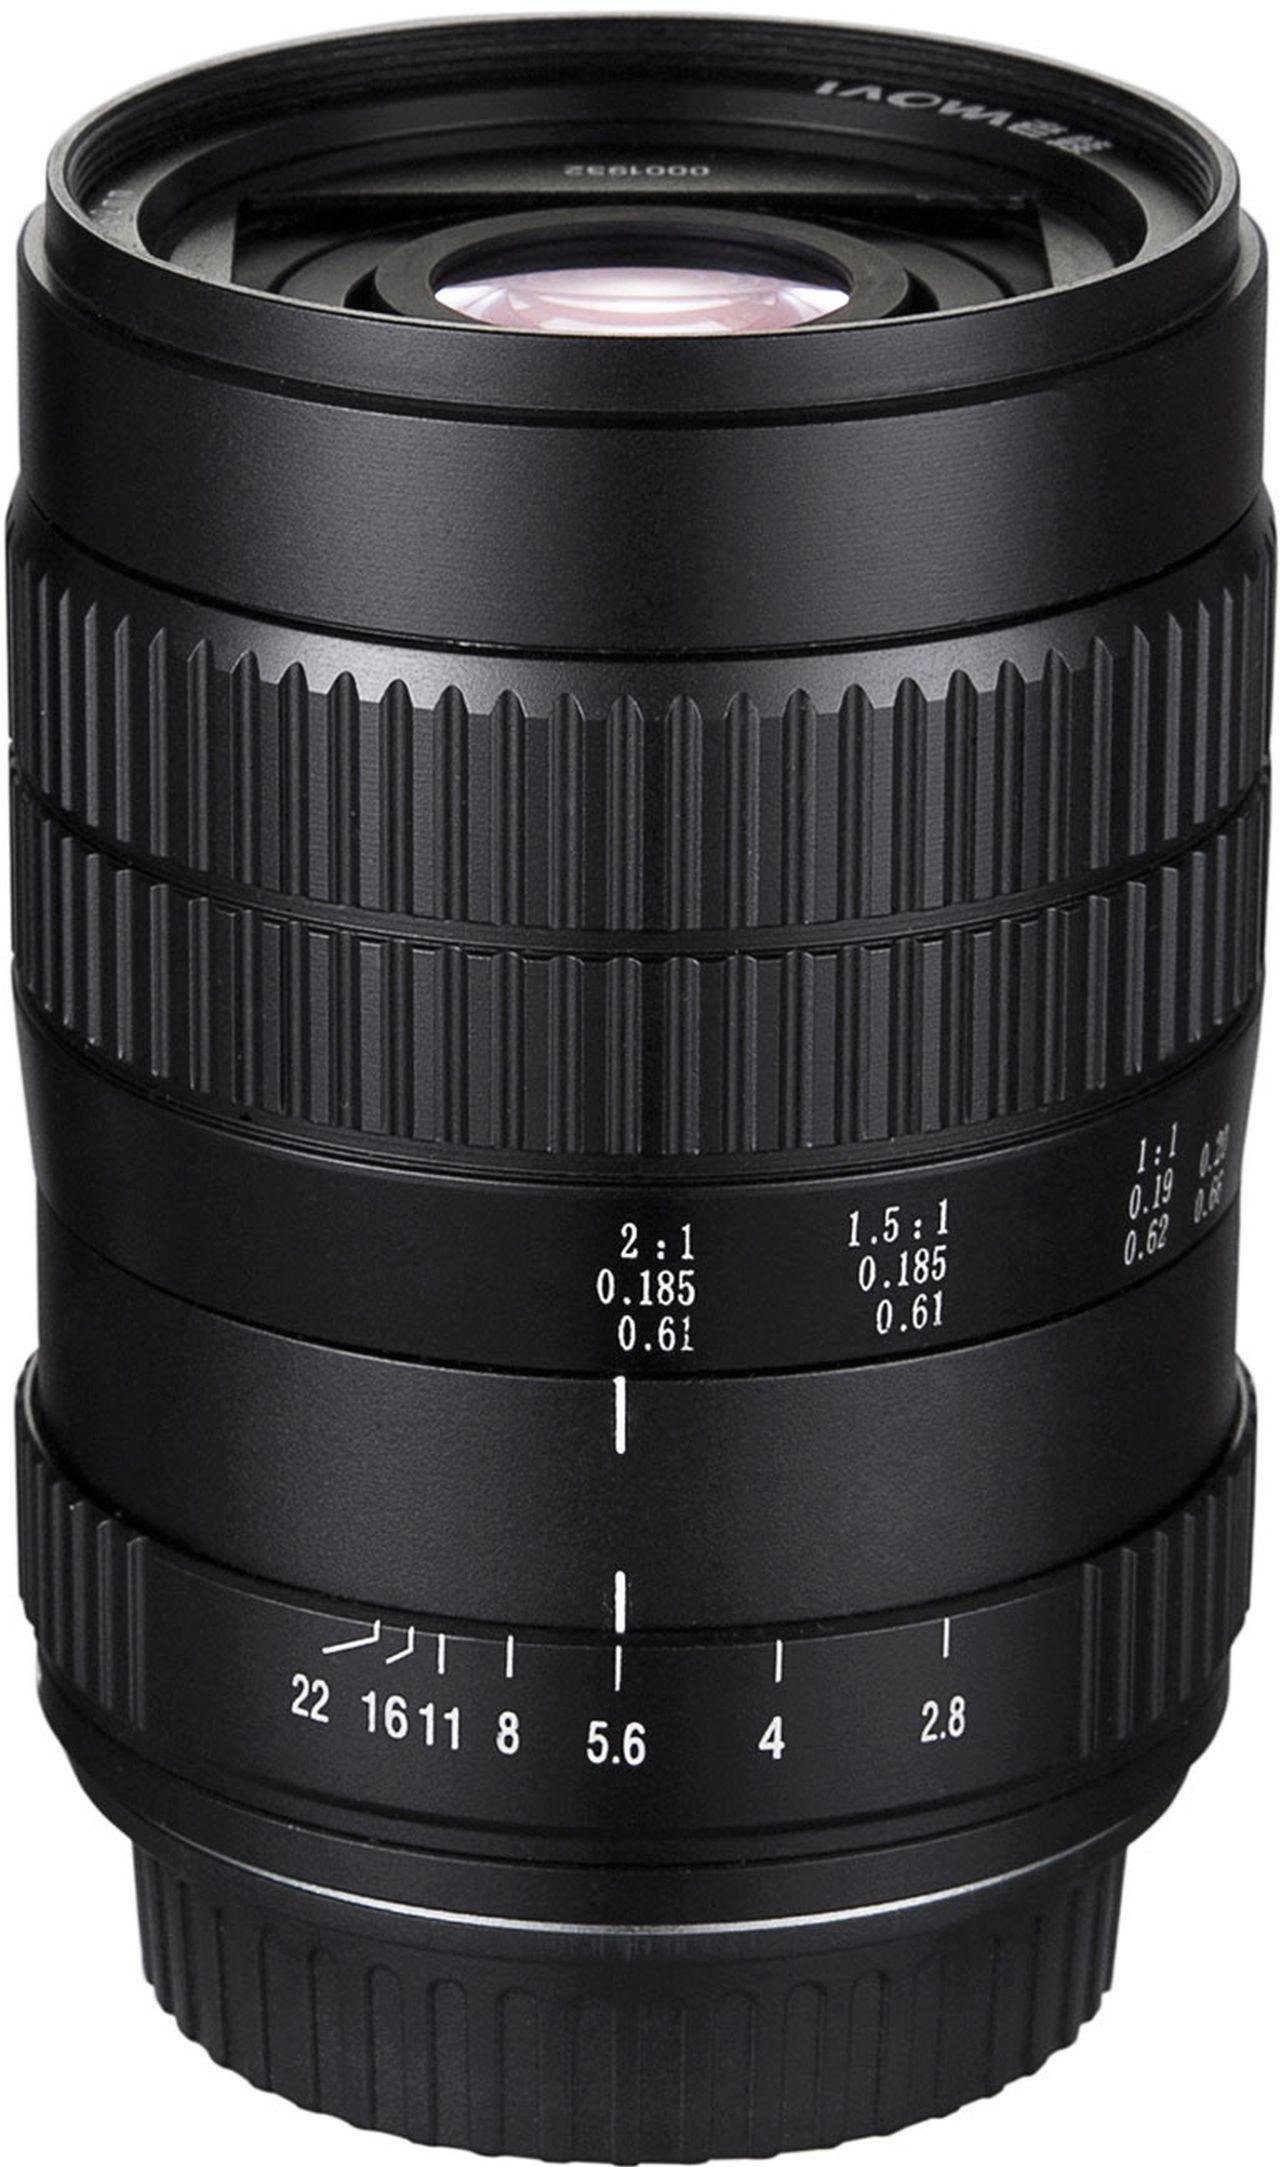 F Nikon 60mm f2,8 Ultra-Macro Objektiv LAOWA 2:1,